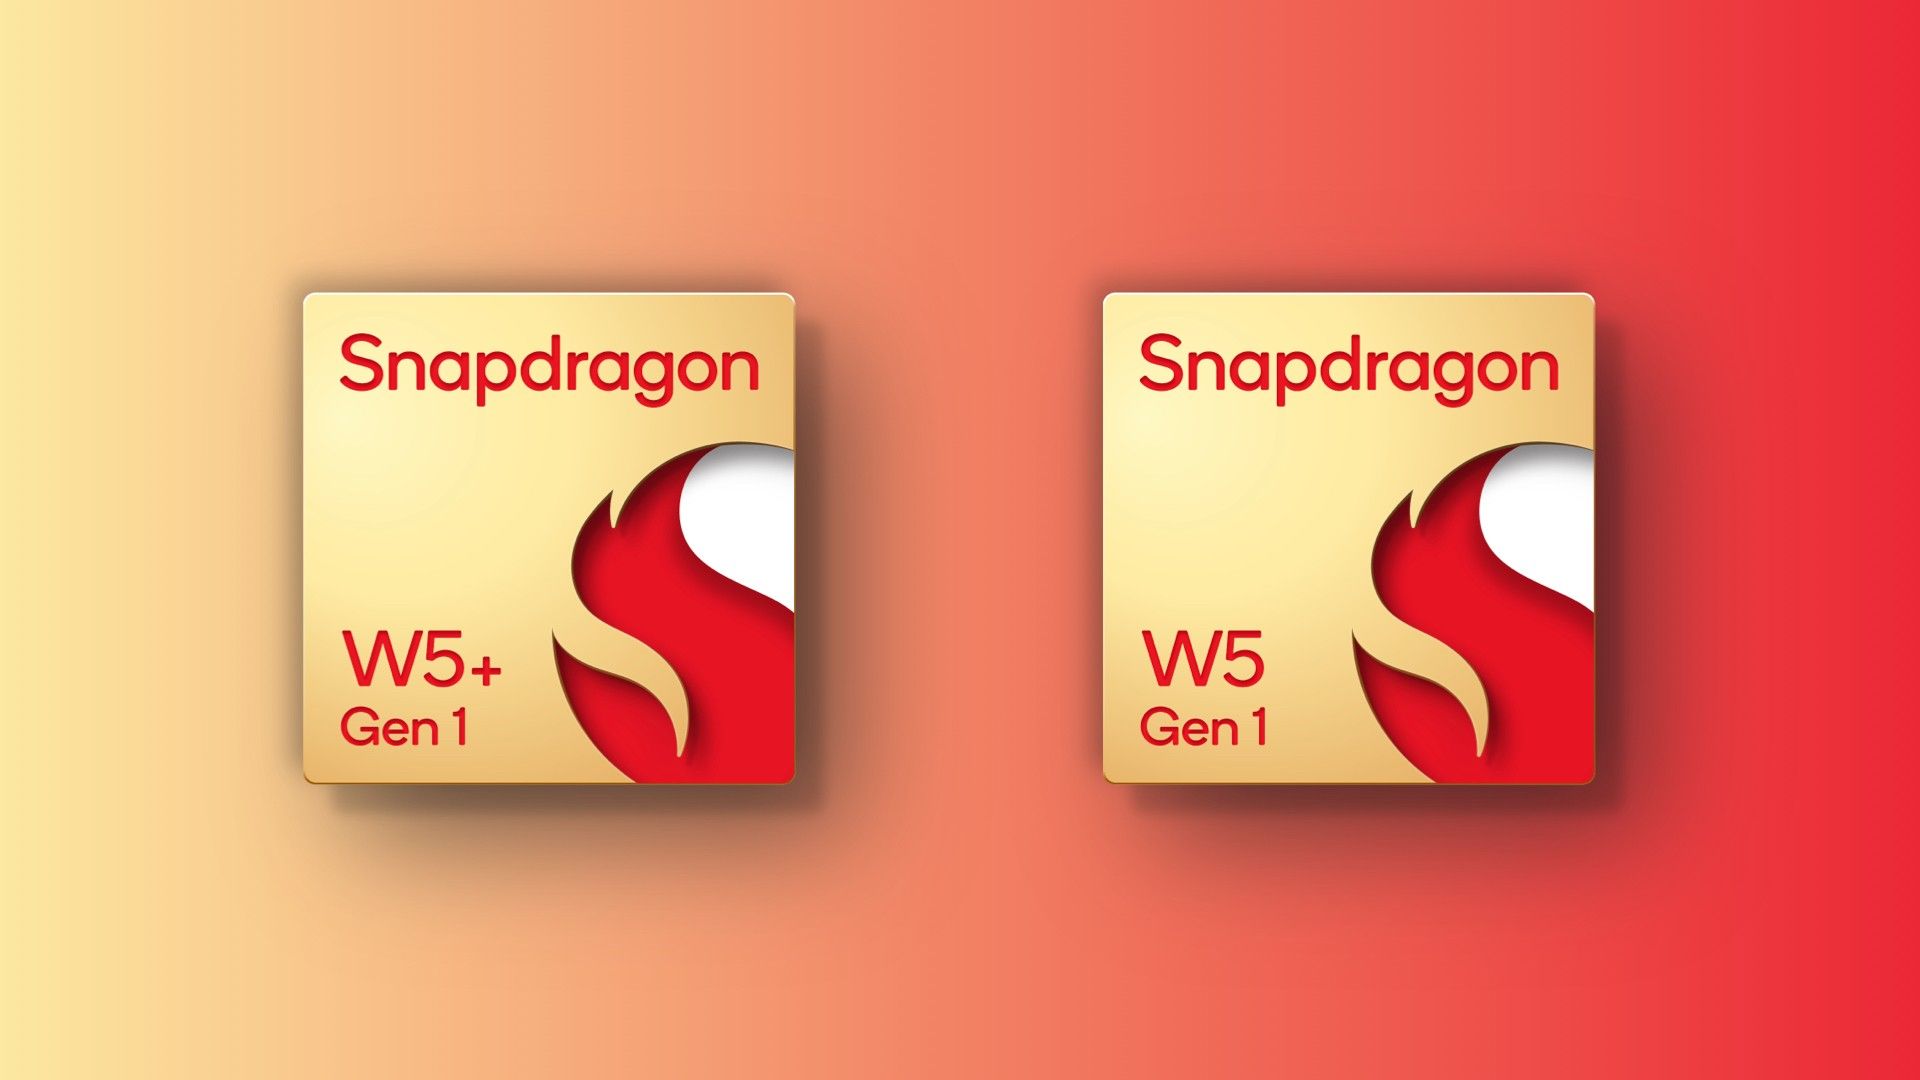 Snapdragon W5 Gen 1 ve W5 Plus Gen 1 görüntüleri